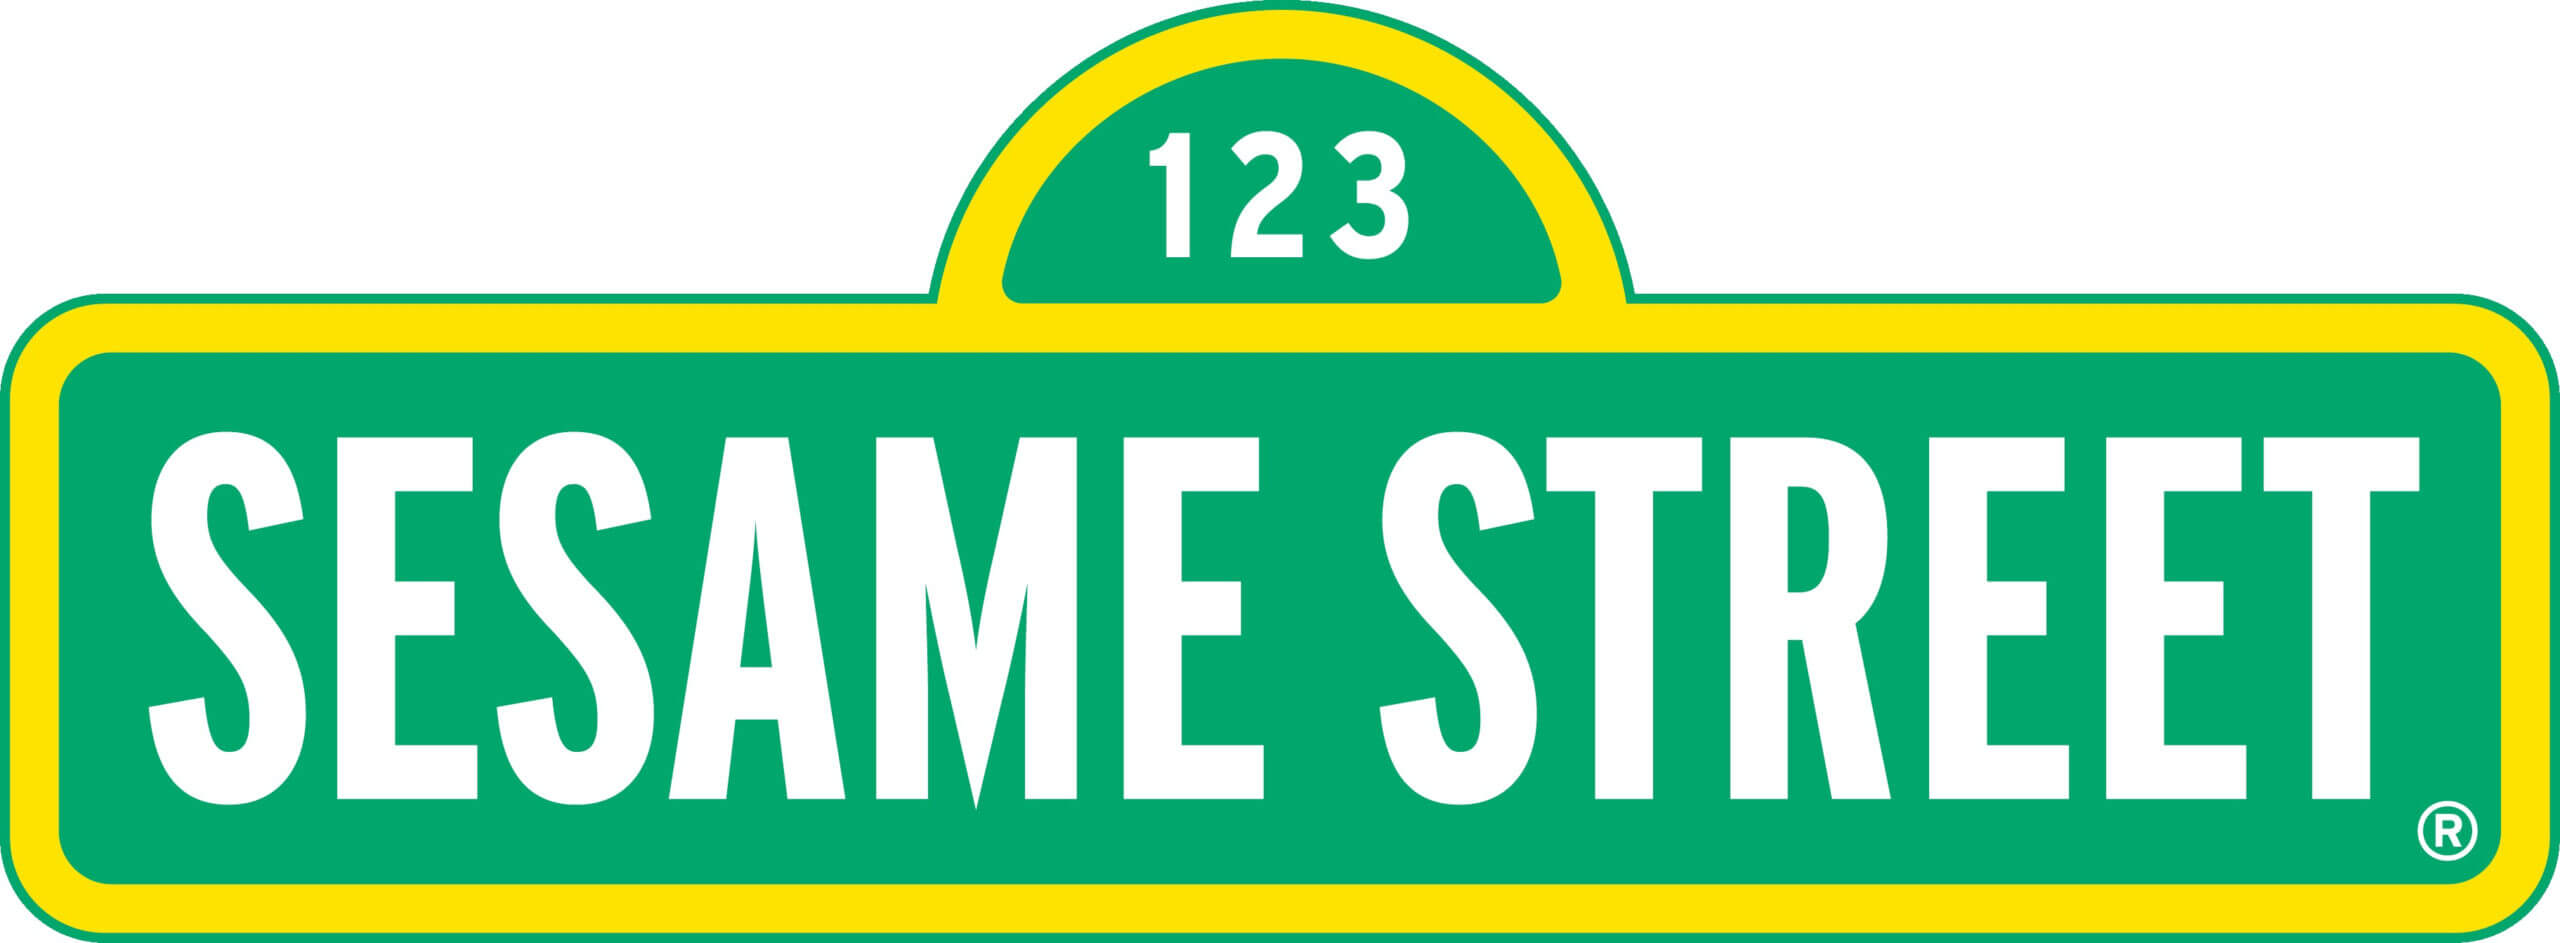 826 Sesame Street Free Clipart – 8 Inside Sesame Street Banner Template